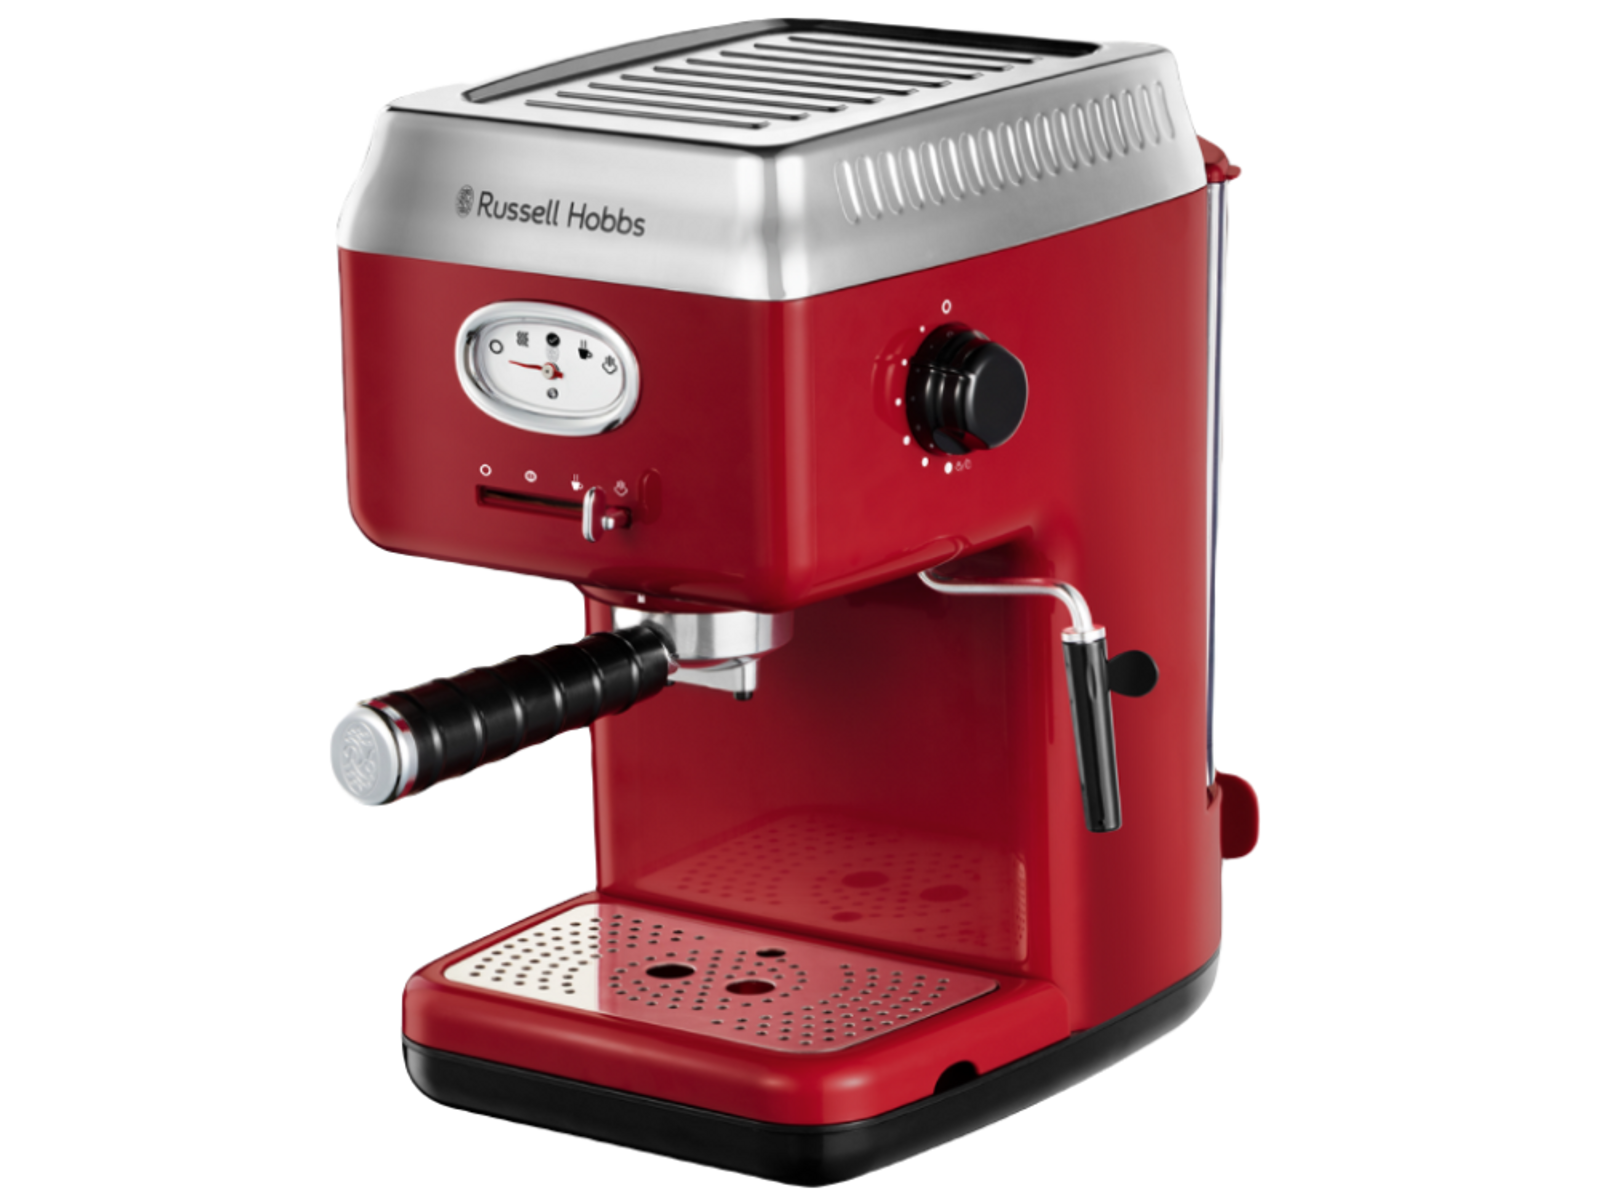 RUSSELL HOBBS Siebträger Retro Espressomaschine rot Espressomaschine